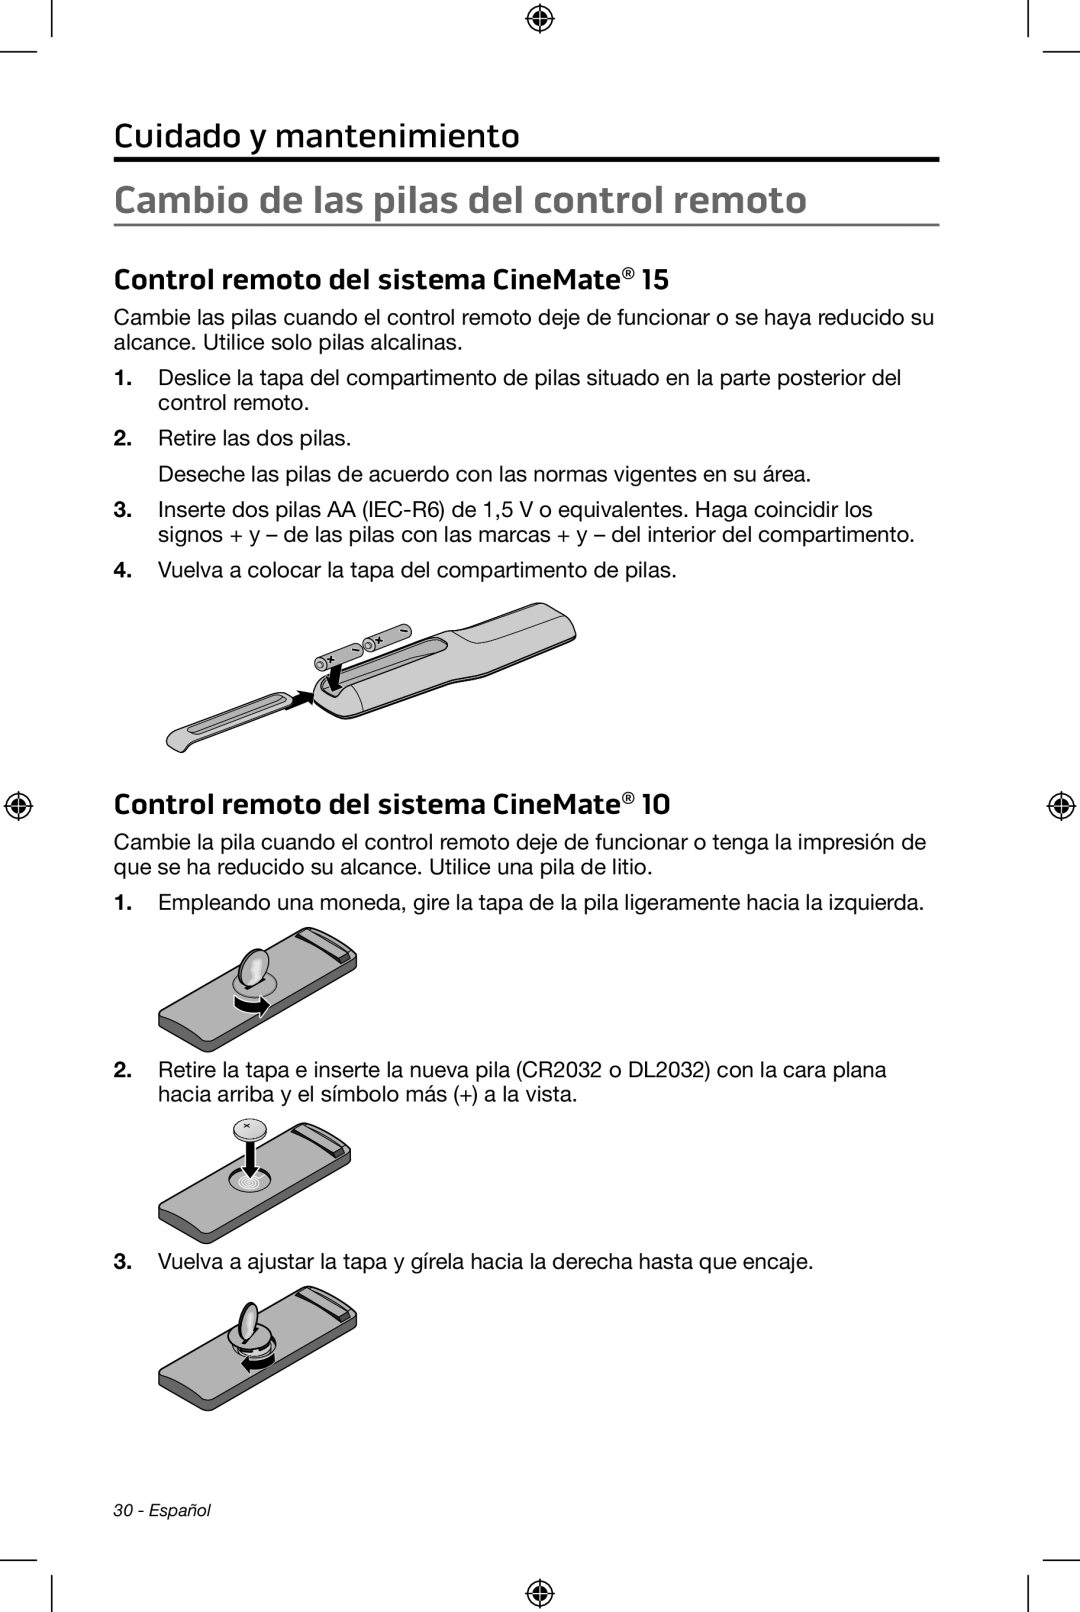 Bose CineMate 15/10 Cambio de las pilas del control remoto, Cuidado y mantenimiento, Control remoto del sistema CineMate 